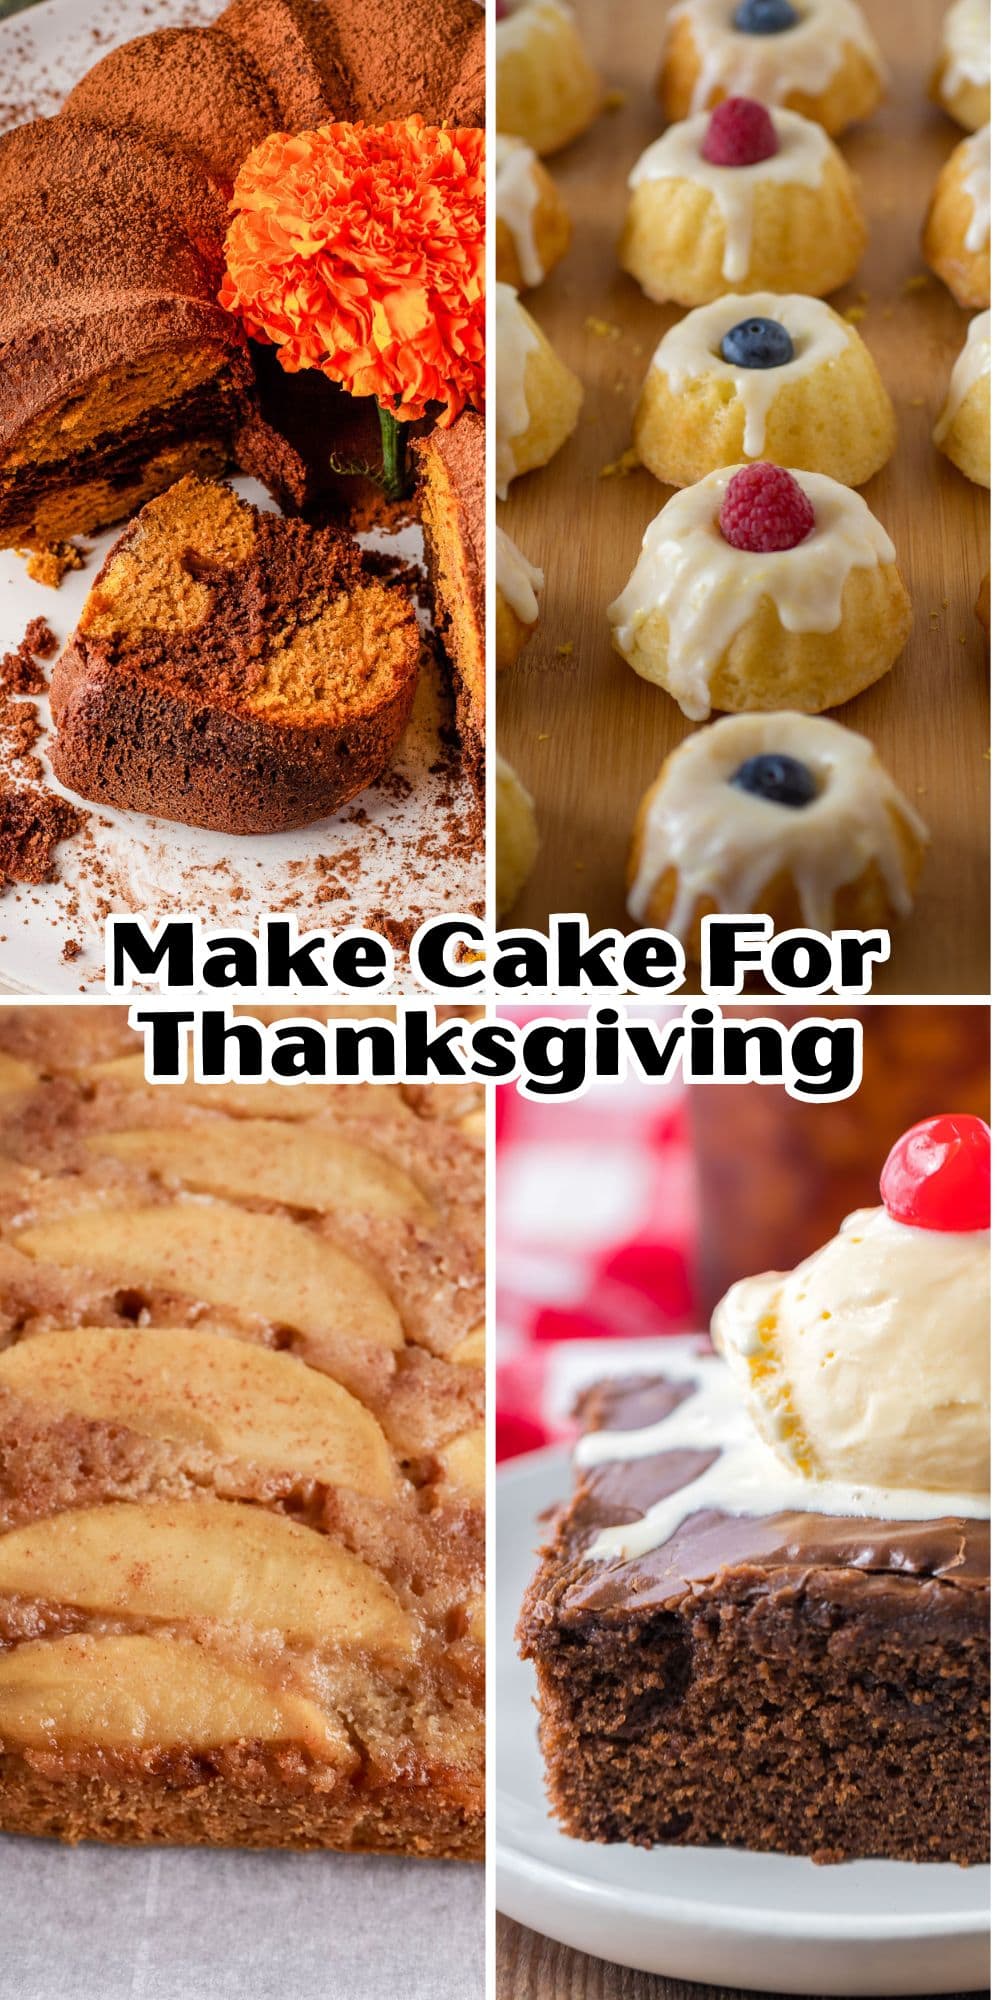 Make cake for thanksgiving.